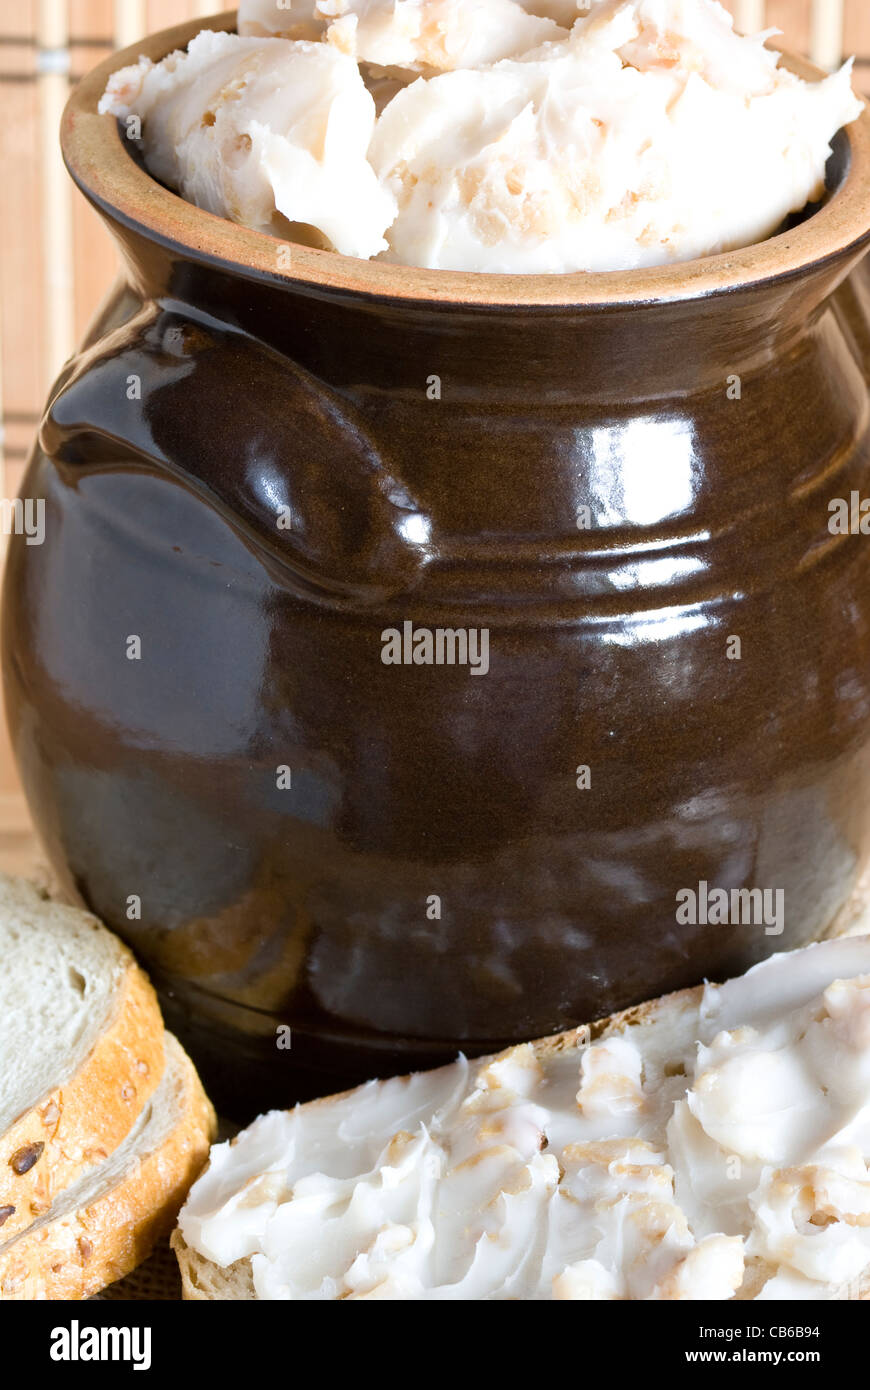 Ceramica marrone piatto completo di lardo con il grasso di maiale Foto Stock